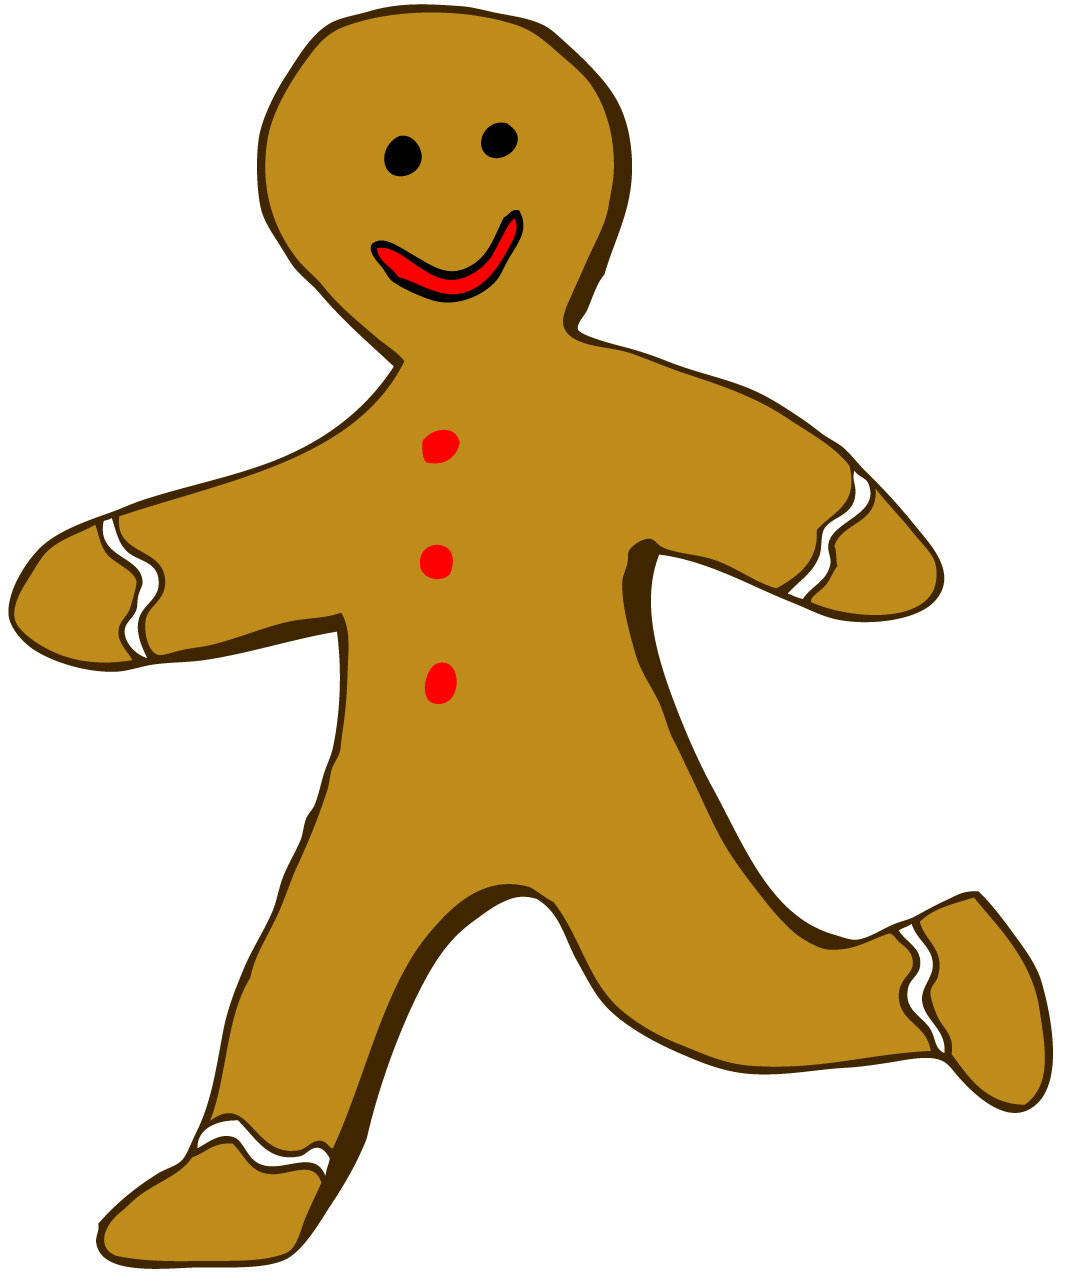 Gingerbread man running clipart.